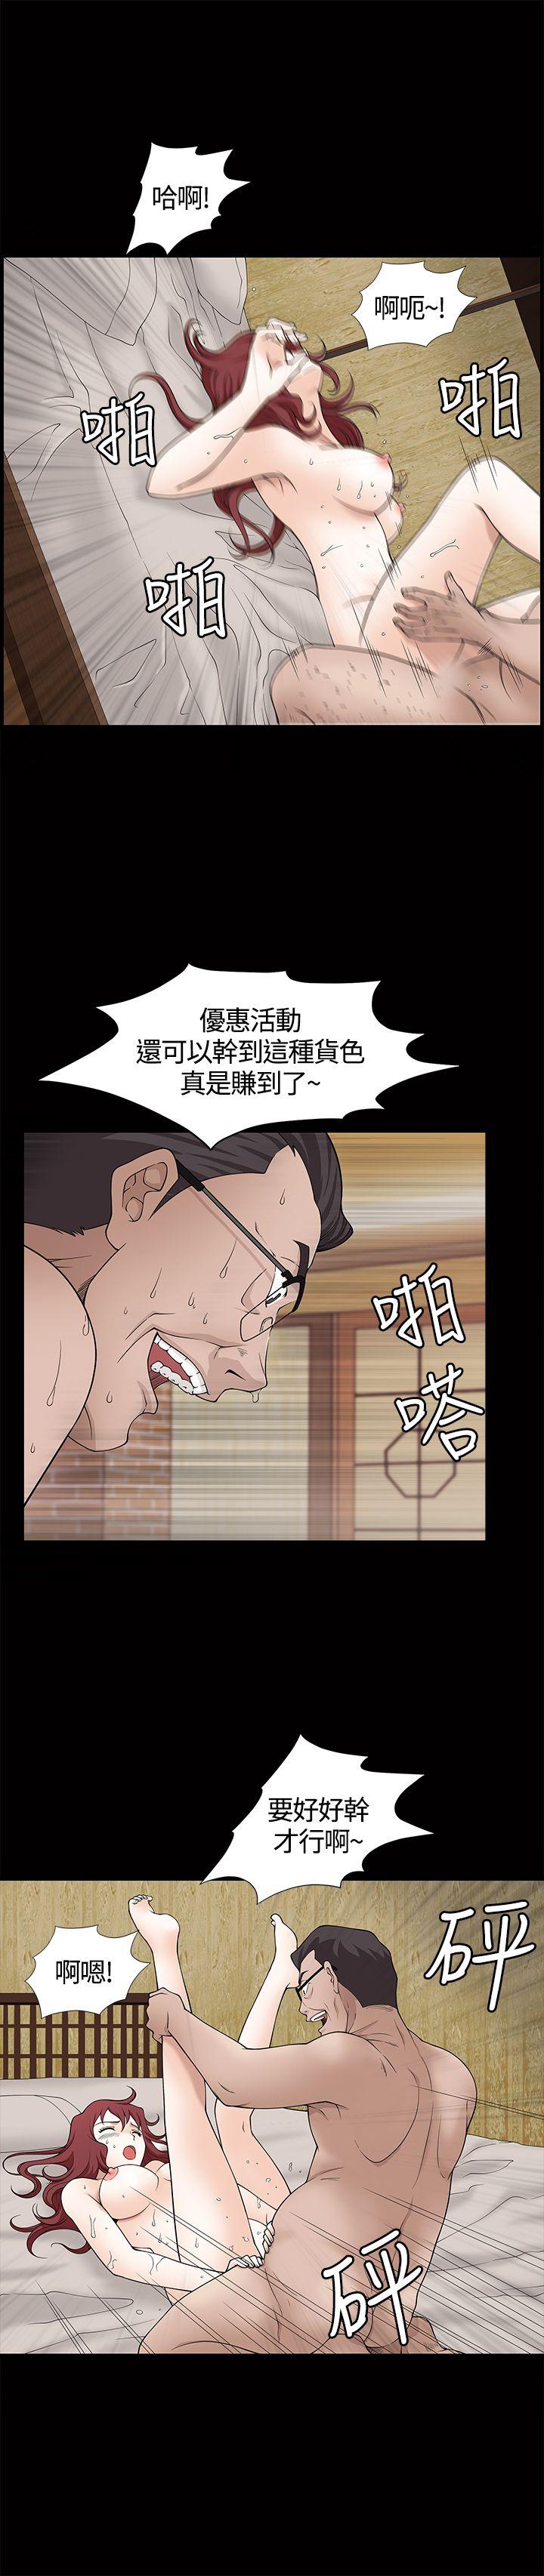 韩国污漫画 人妻性解放3:粗糙的手 第7话 26